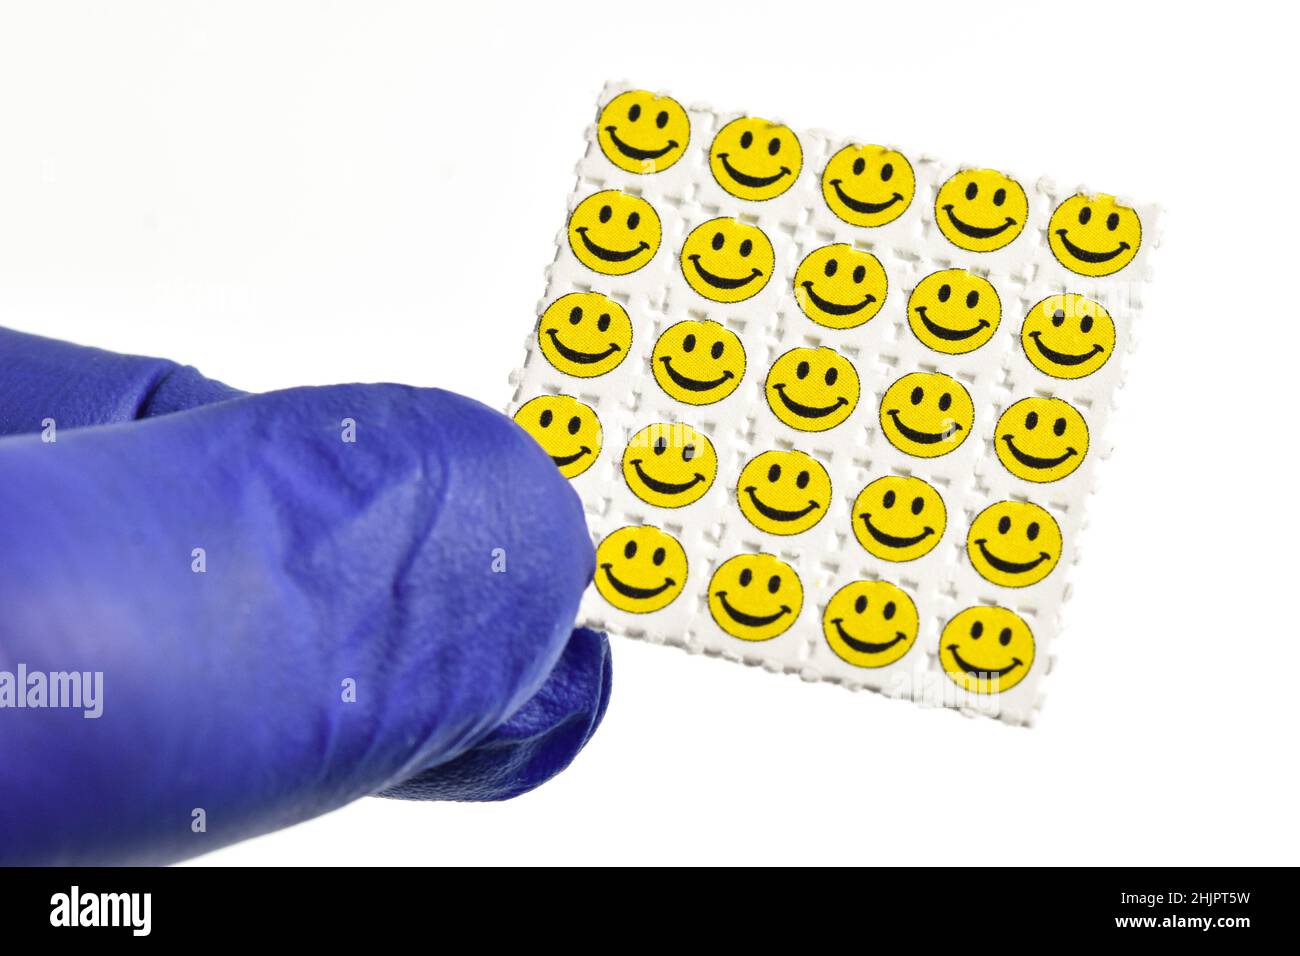 Smiley visage acide trébuchements, papier buvard imprégné de la drogue L. NSVAC- acide lysergique diéthylamide. Banque D'Images